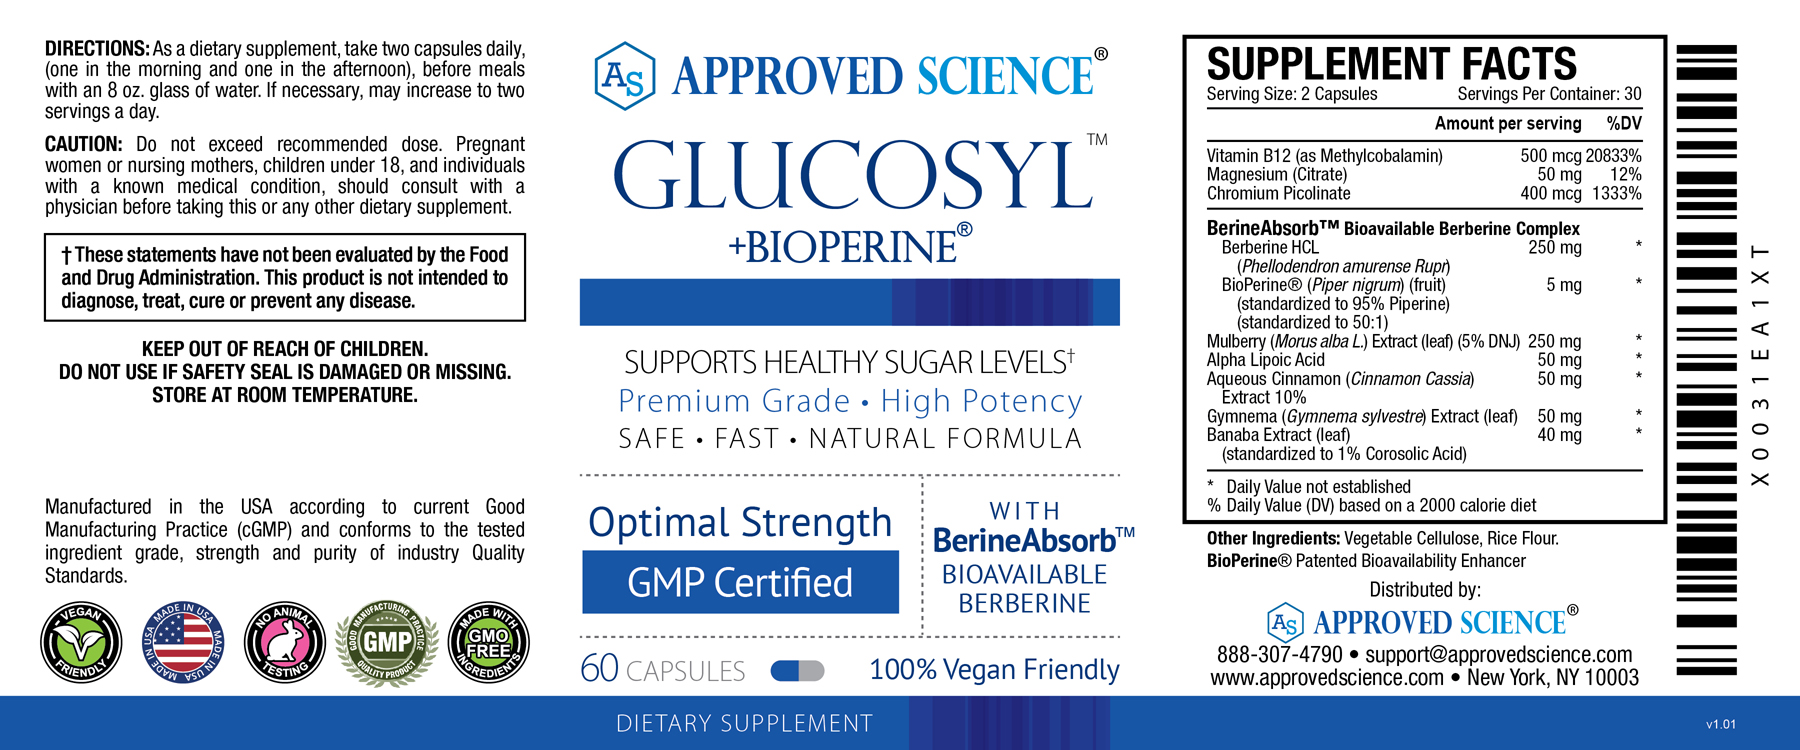 Glucosyl™ Supplement Facts